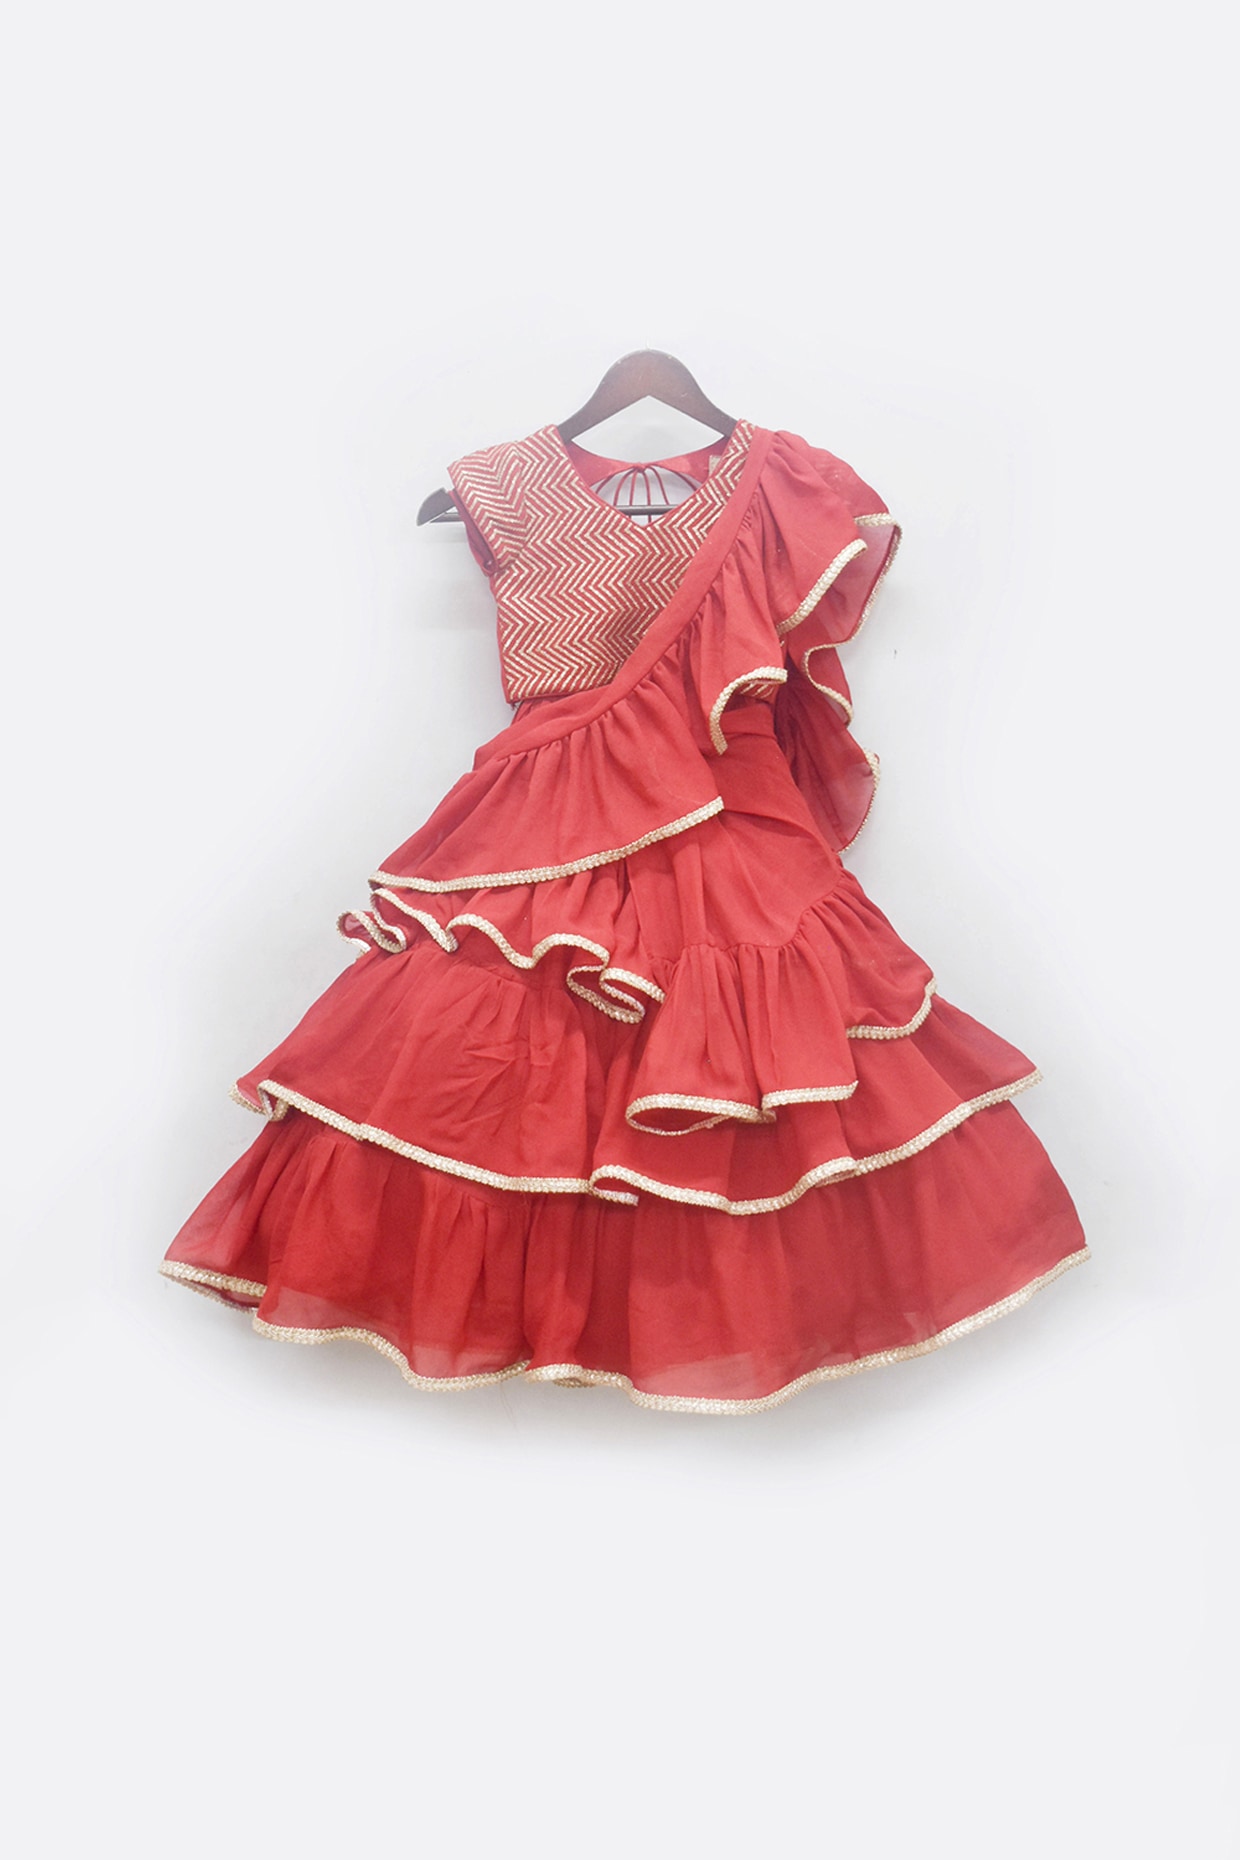 Lehenga for Girls | Designer Kidswear Online